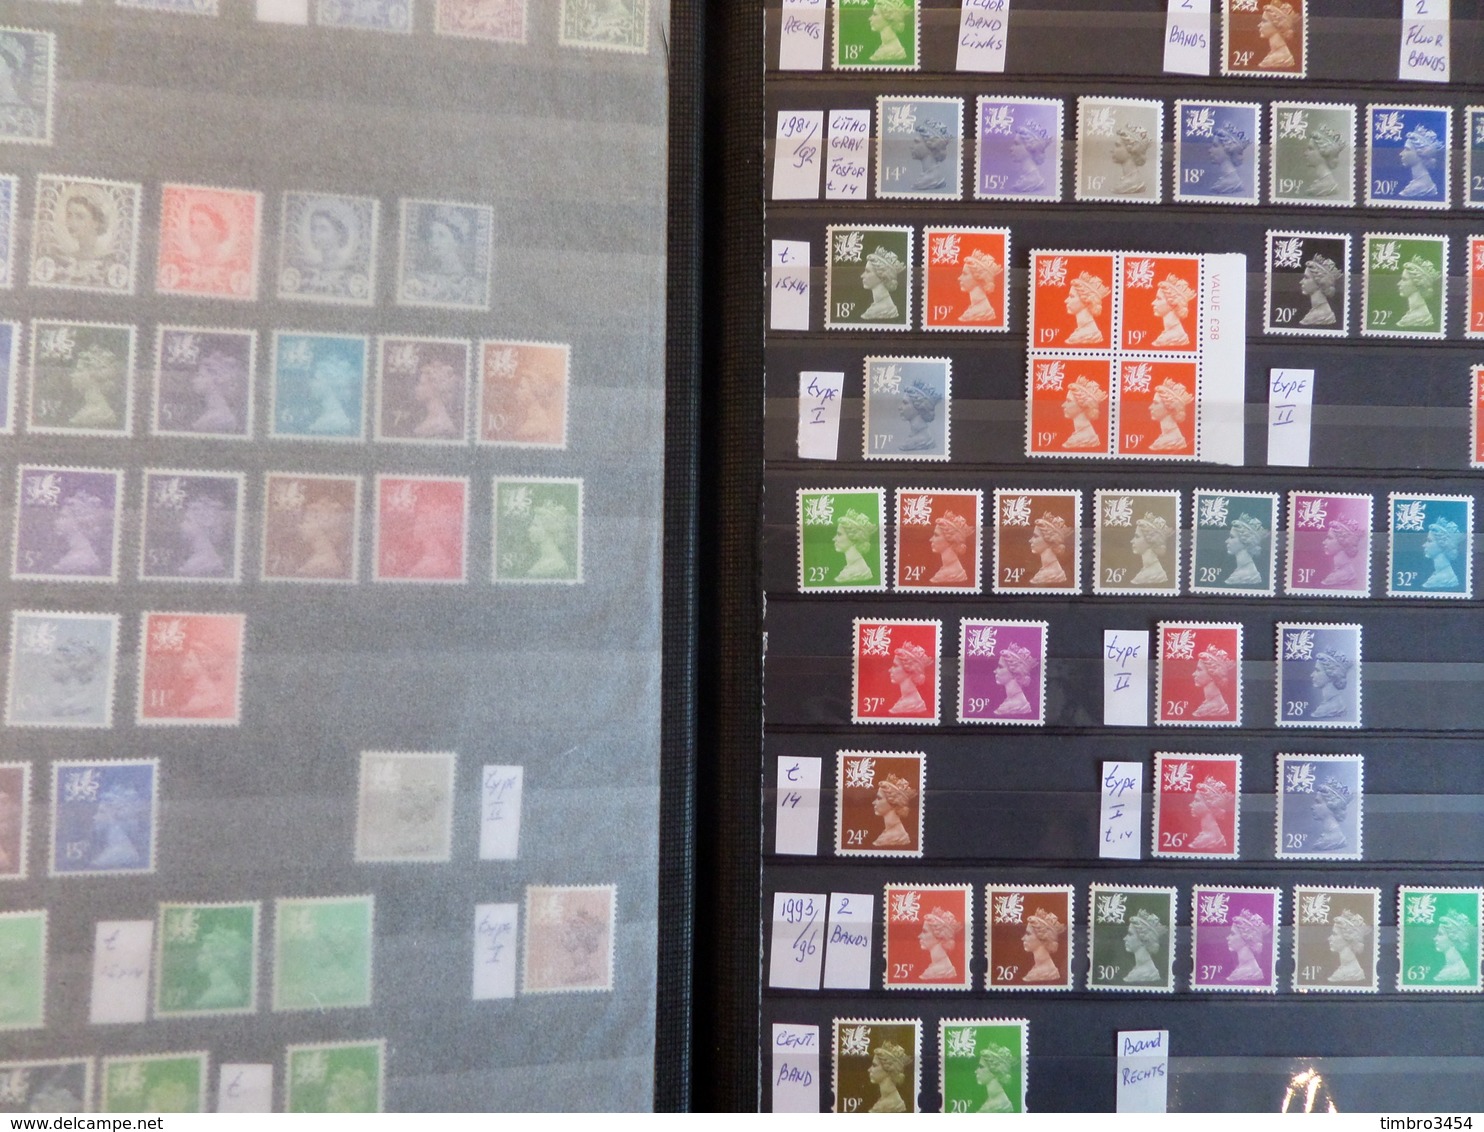 Superbe vrac de milliers de timbres tous pays. Anciens, nombreux pays + bonnes valeurs ! . Cote énorme!!! A saisir!